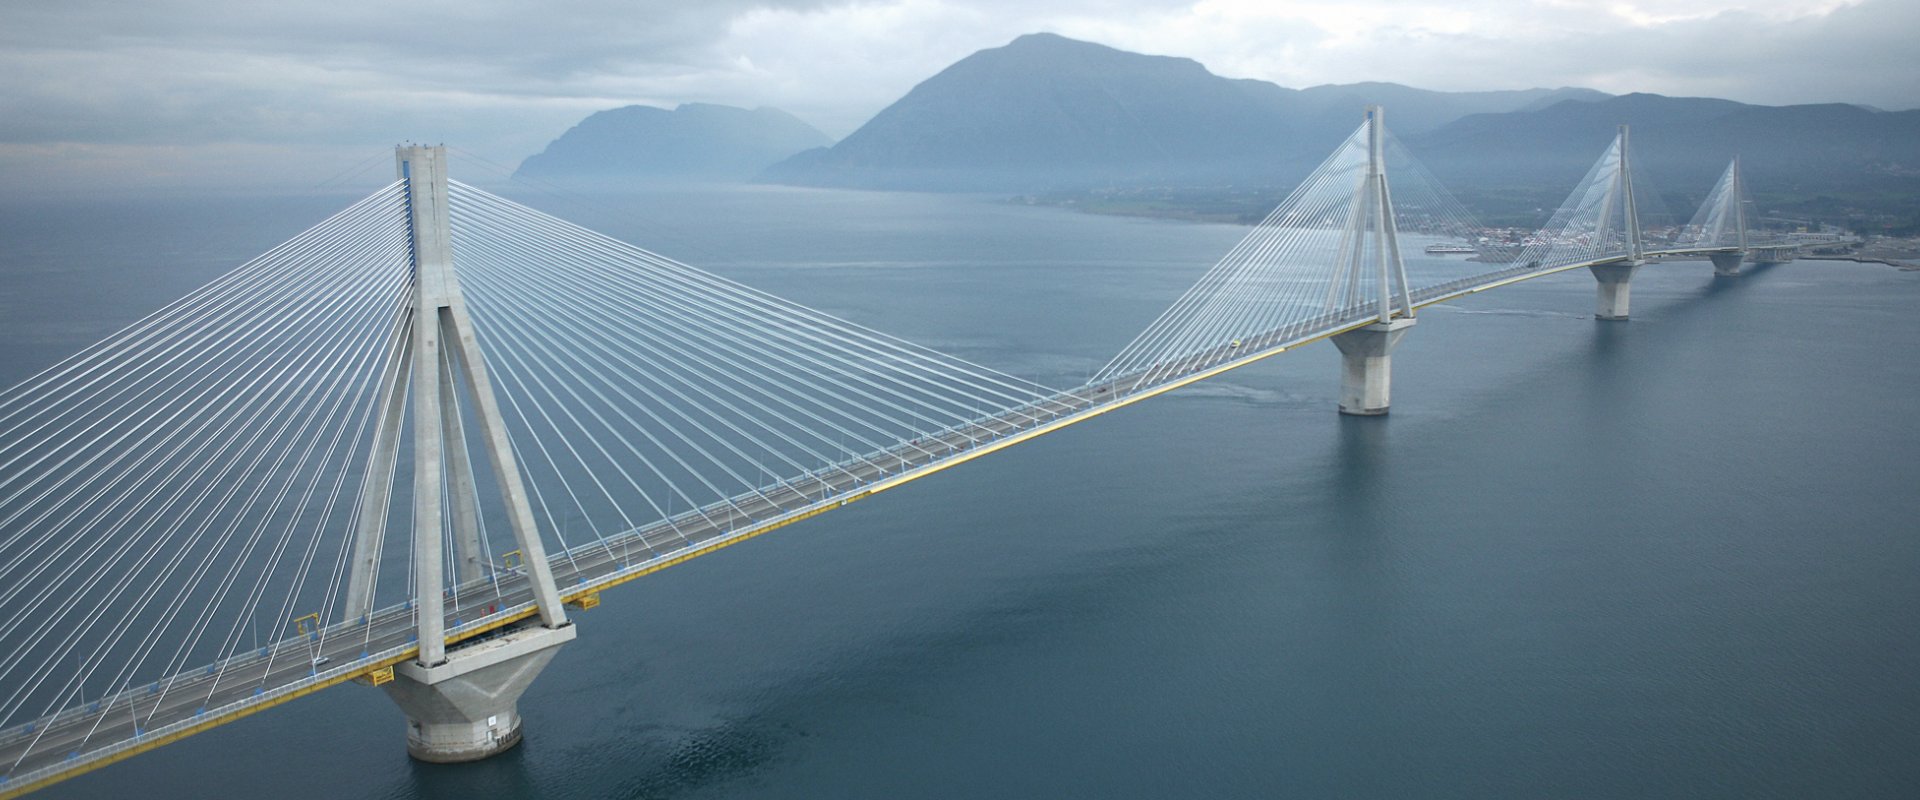 Le pont Charilaos Trikoupis, sur le golfe de Corinthe en Grèce, conçu, réalisé et exploité par VINCI